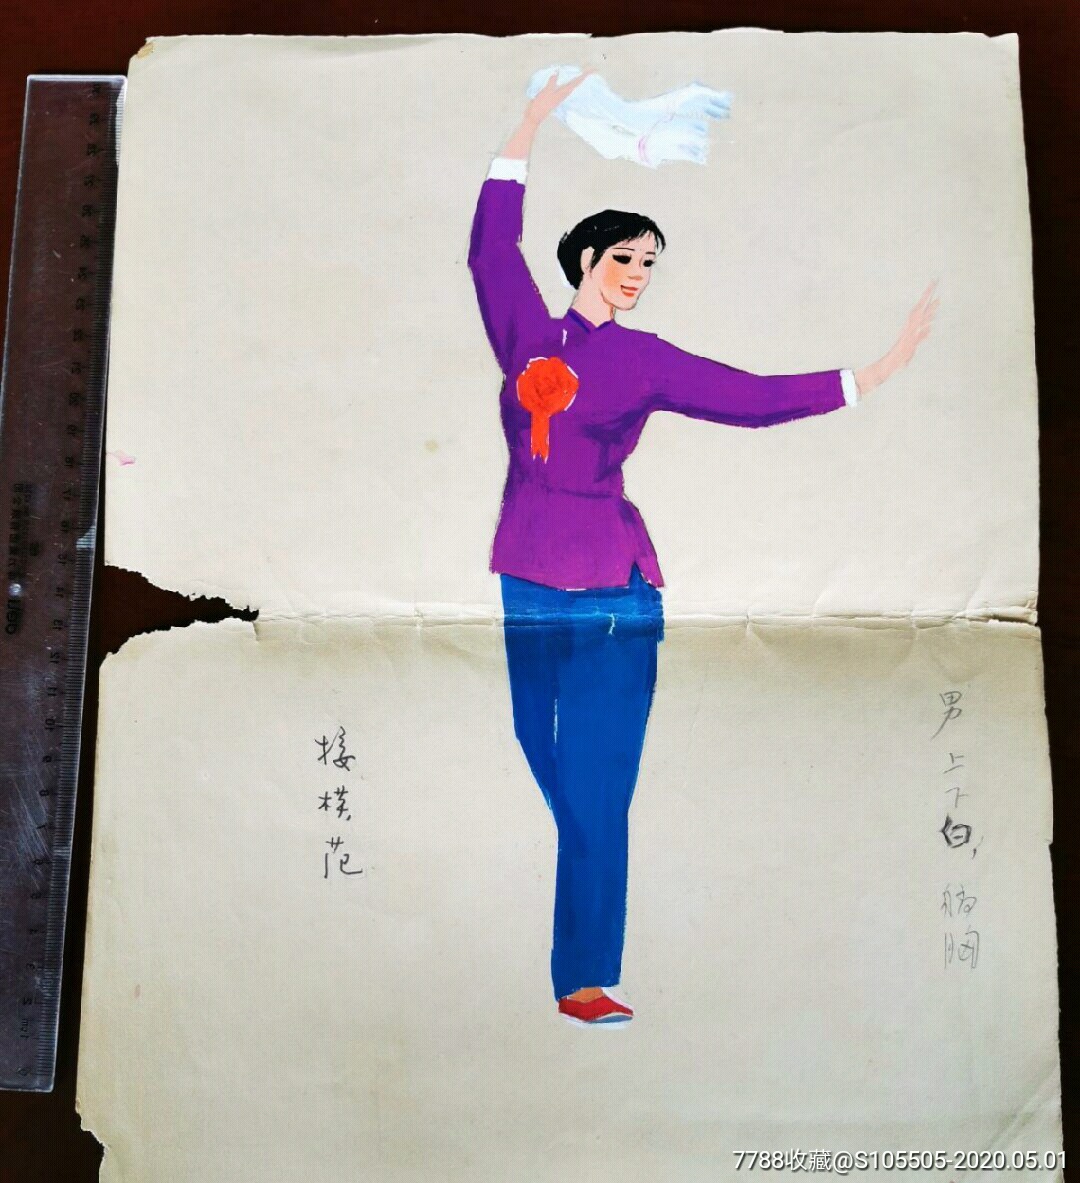 1962前后安徽省话剧团演出服装设计稿接模范